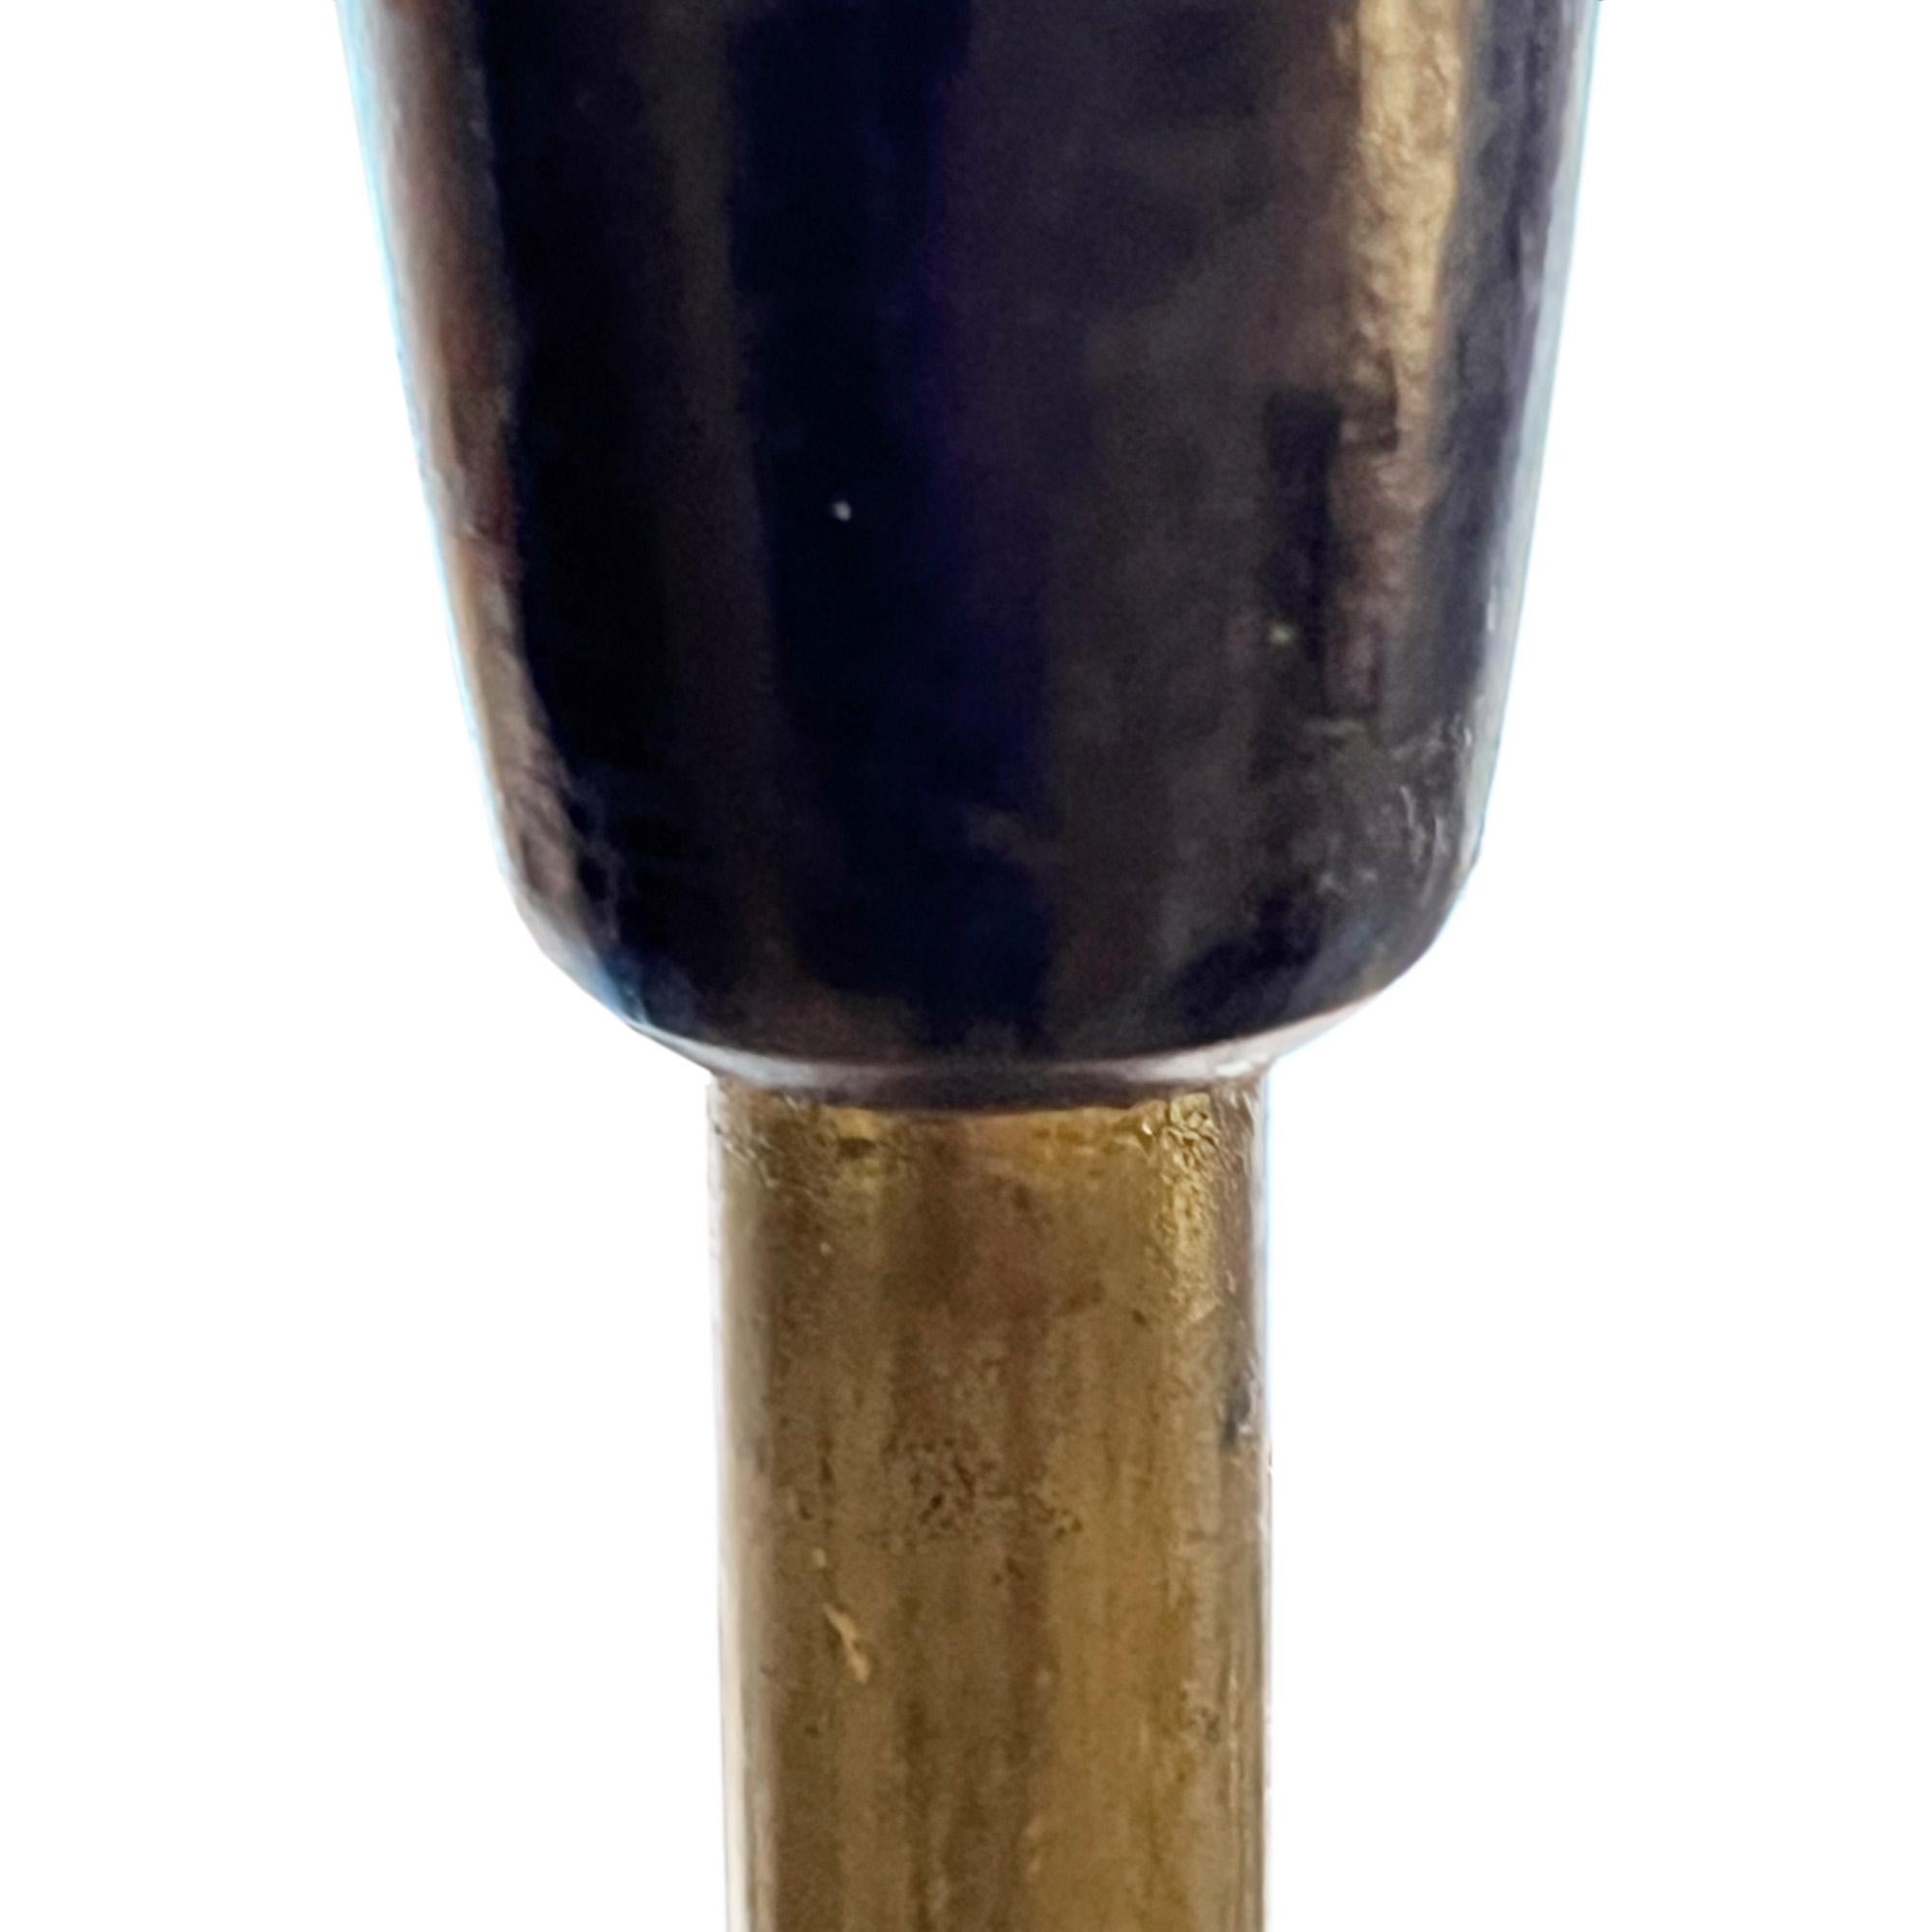 Ce lampadaire élégant a été fabriqué au Danemark dans les années 1960.

Fabriqué en bois ébonisé sculpté et en laiton, il présente une colonne élégante - 152 cm jusqu'au sommet de la ferrure.

Illustré avec un abat-jour sur mesure que nous vendons